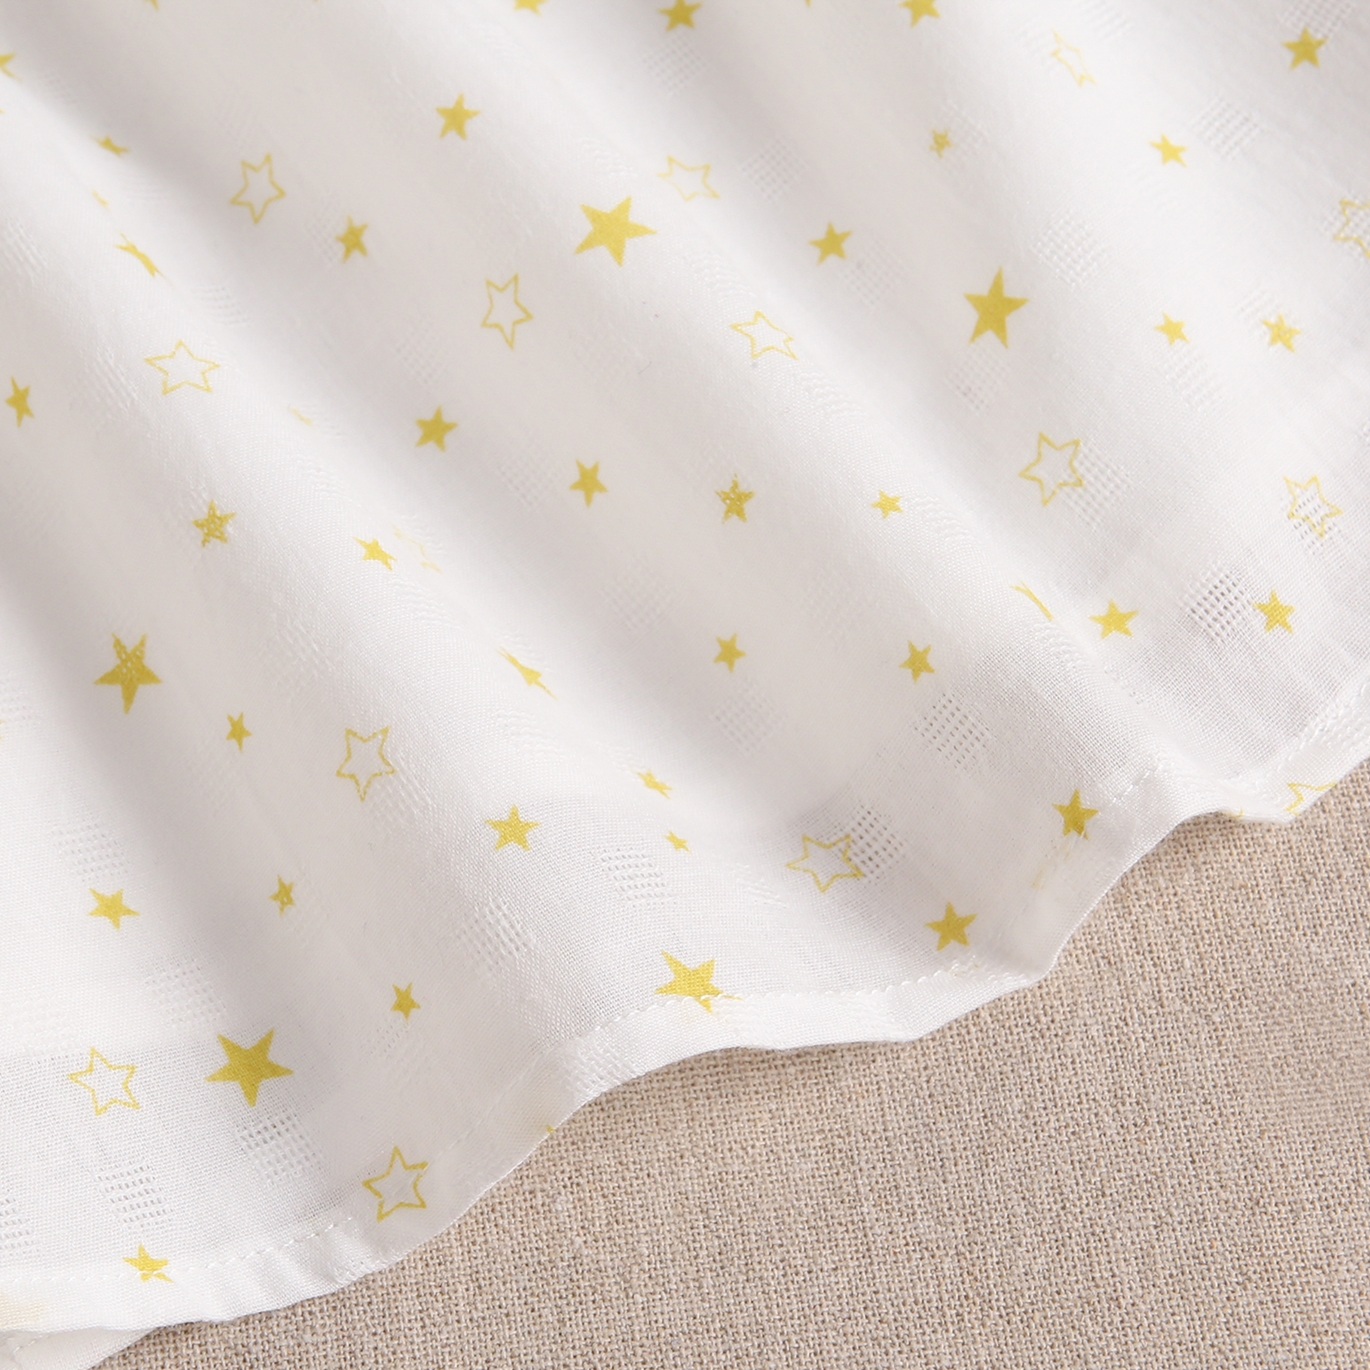 Imagen de Blusa teen blanca con estampado de estrellas amarillas